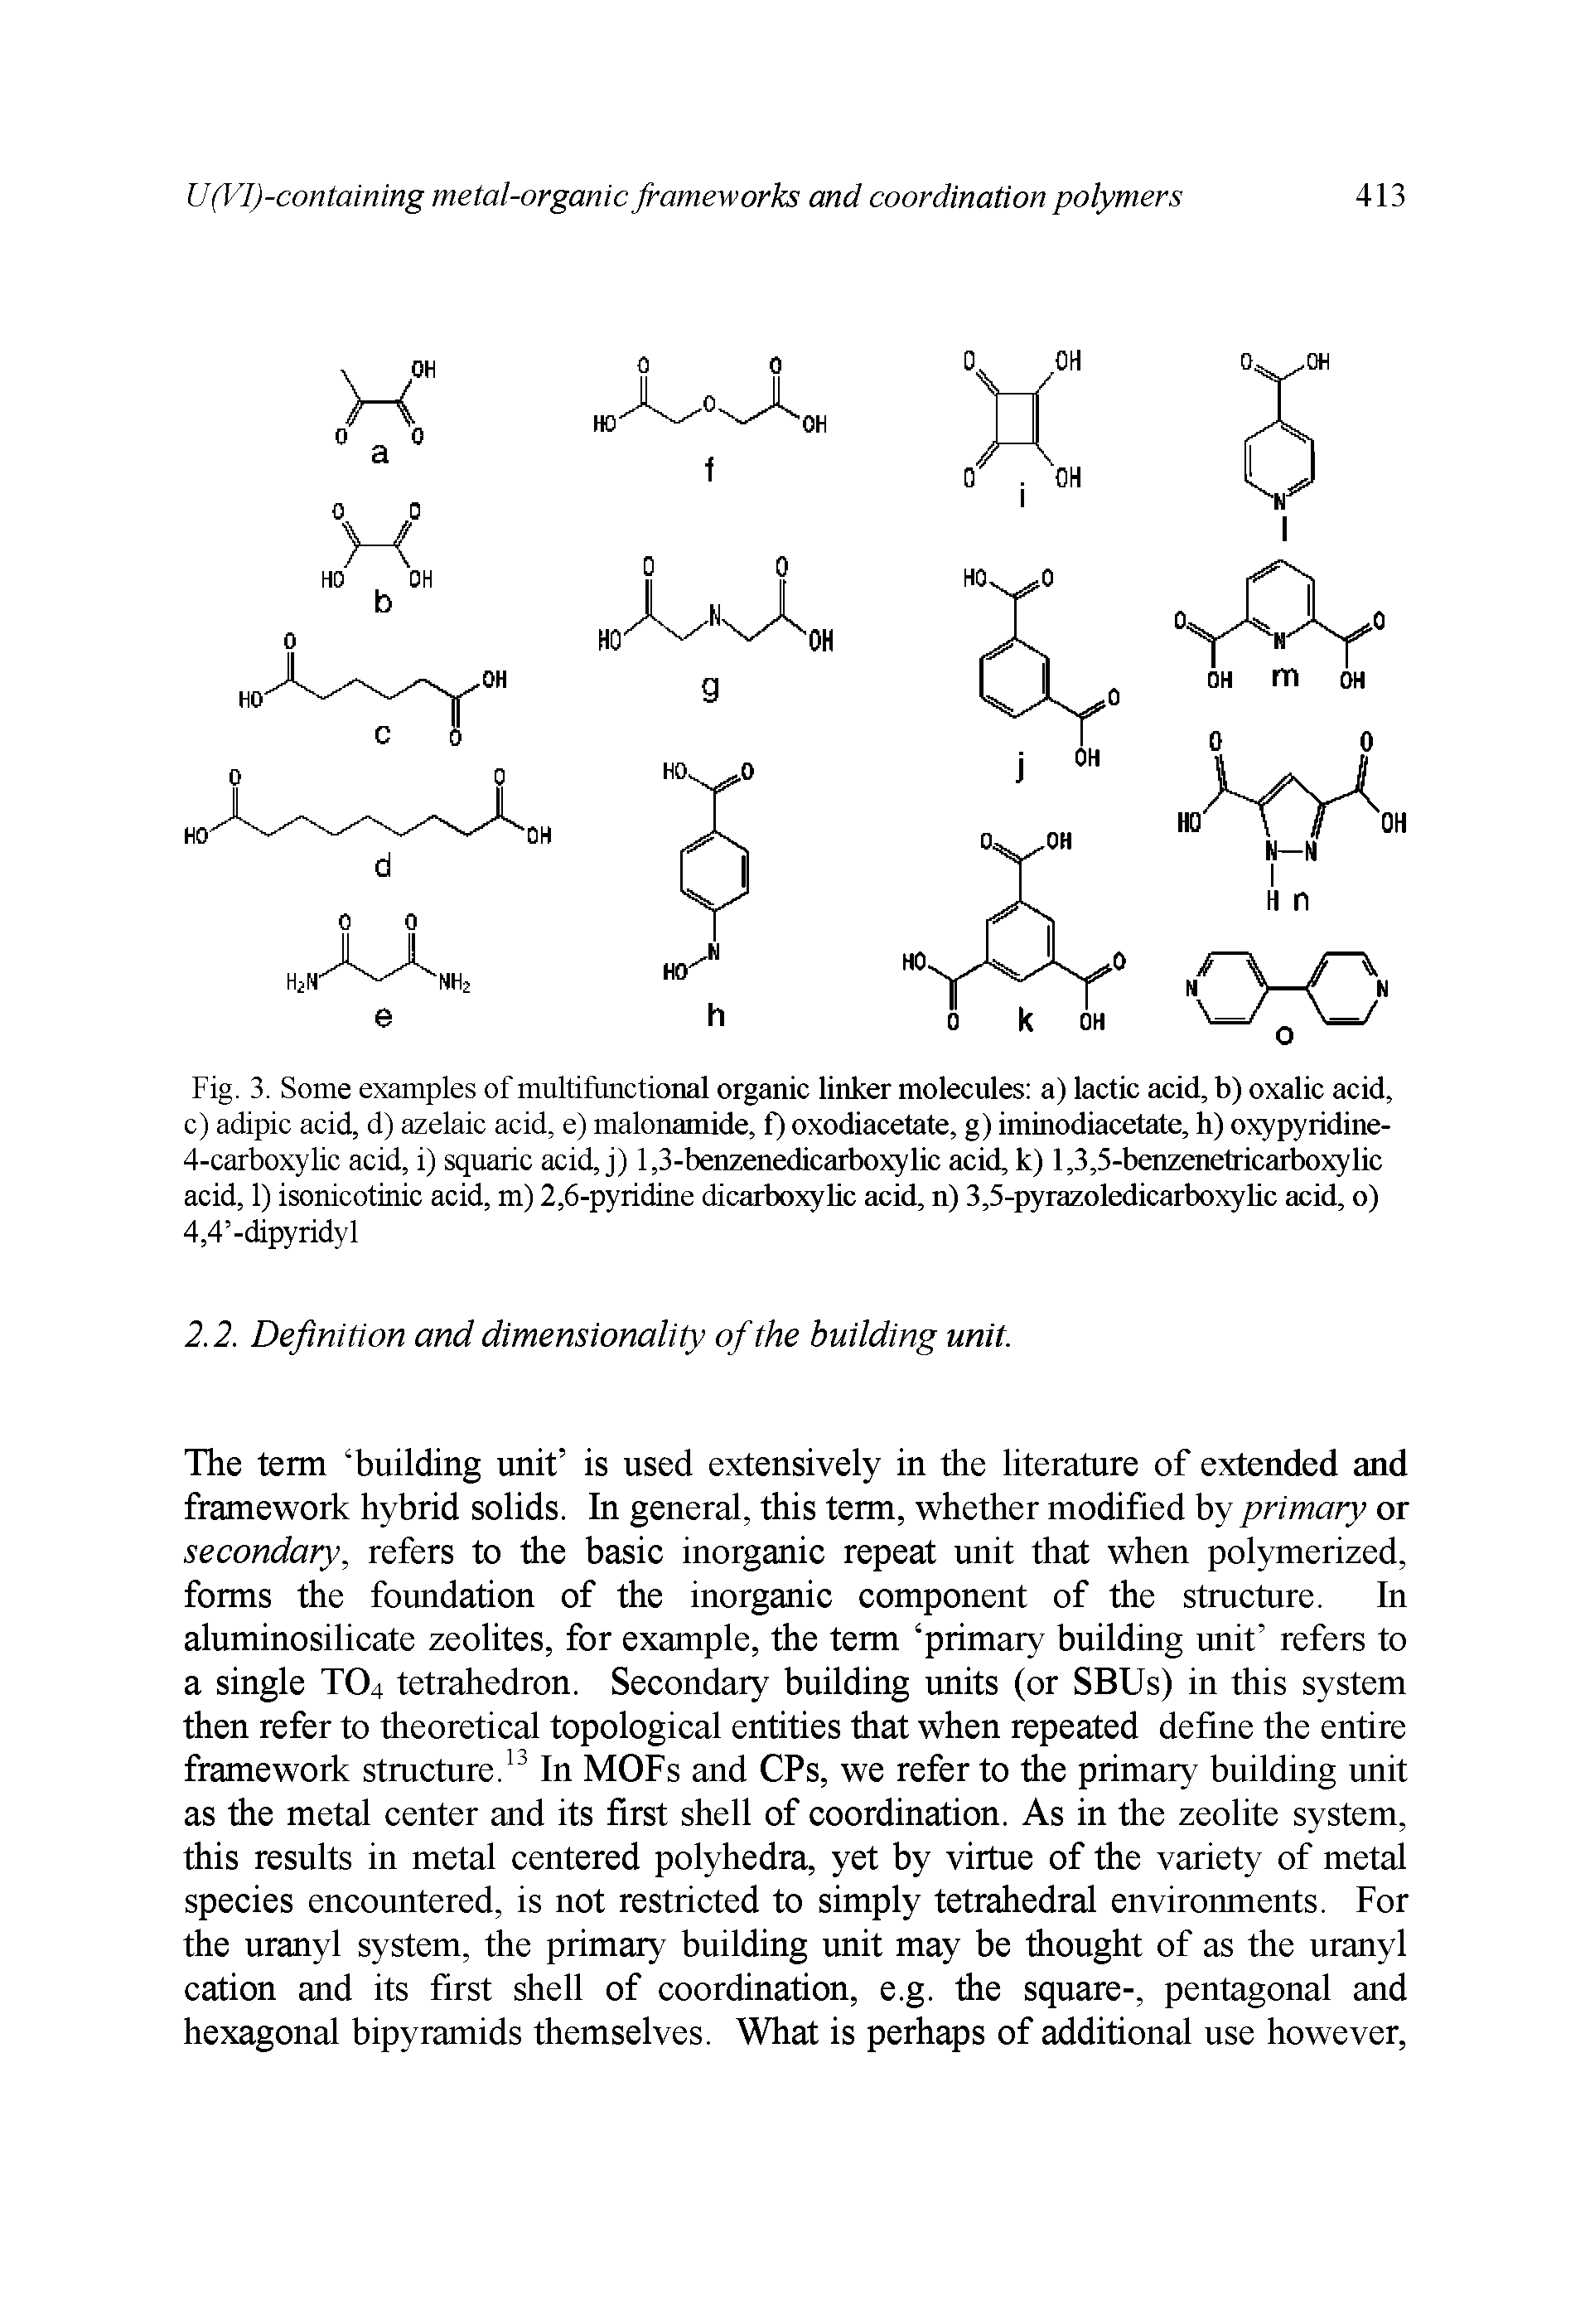 Fig. 3. Some examples of multifunctional organic linker molecules a) lactic acid, b) oxalic acid, c) adipic acid, d) azelaic acid, e) malonamide, f) oxodiacetate, g) iminodiacetate, h) oxypyridine-4-carboxylic acid, i) squaric acid, j) 1,3-benzenedicarboxylic acid, k) 1,3,5-benzenetricarboxylic acid, 1) isonicotinic acid, m) 2,6-pyridine dicarboxyUc acid, n) 3,5-pyrazoledicarboxyUc acid, o) 4,4 -dipyridyl...